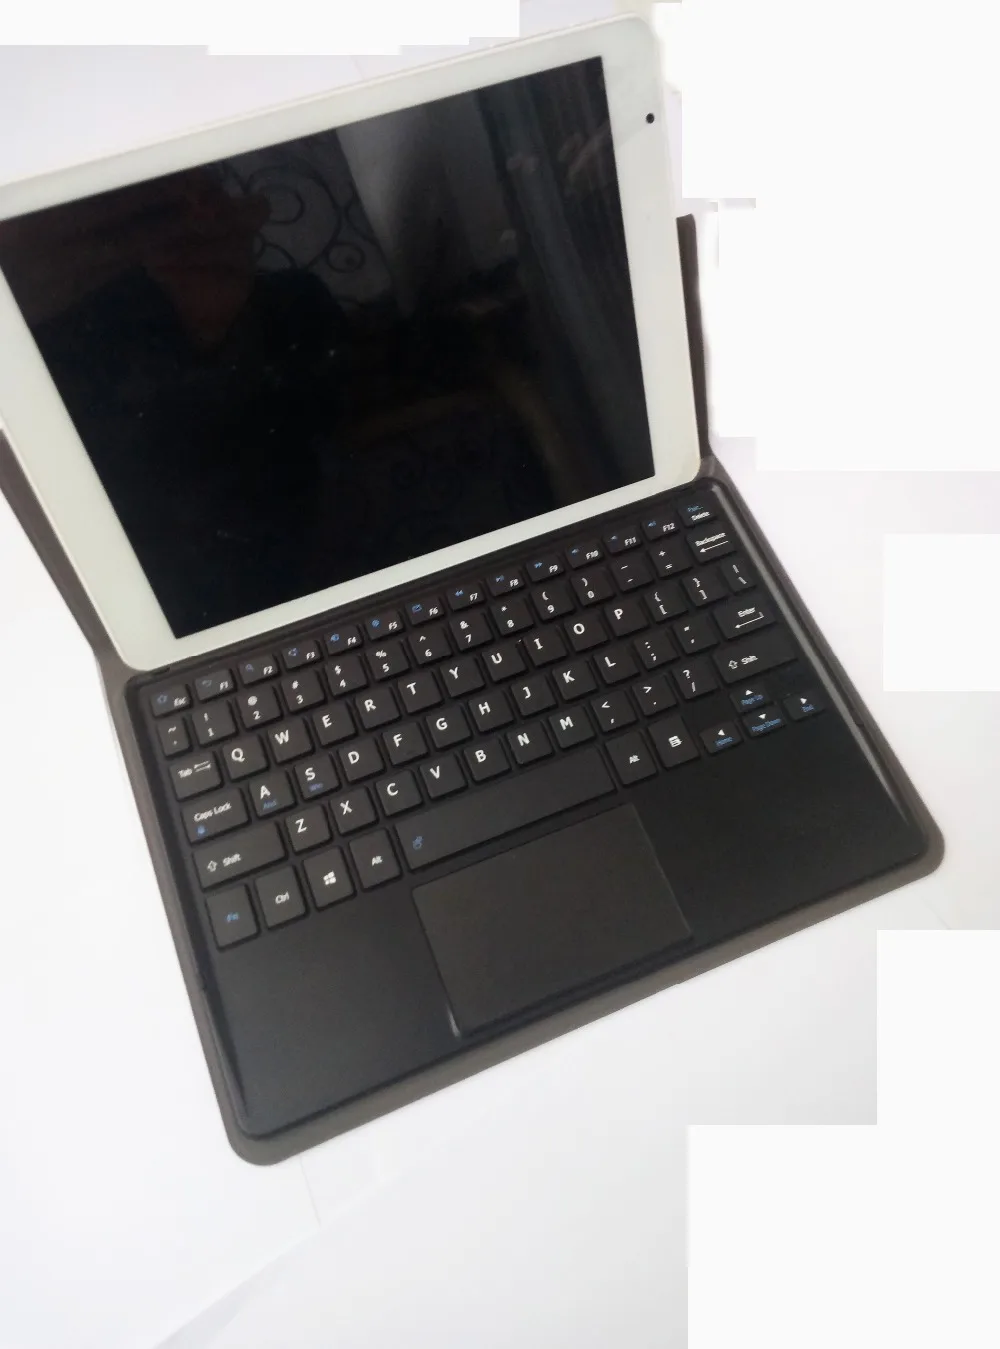 Teclado QWERTY Formato inglés Detachable Wireless Teclado LiuShan Acer B3-A40 Teclado Funda PU Cuero con Soporte Caso para 10.1 Acer Iconia One 10 B3-A40 Tablet,Negro 